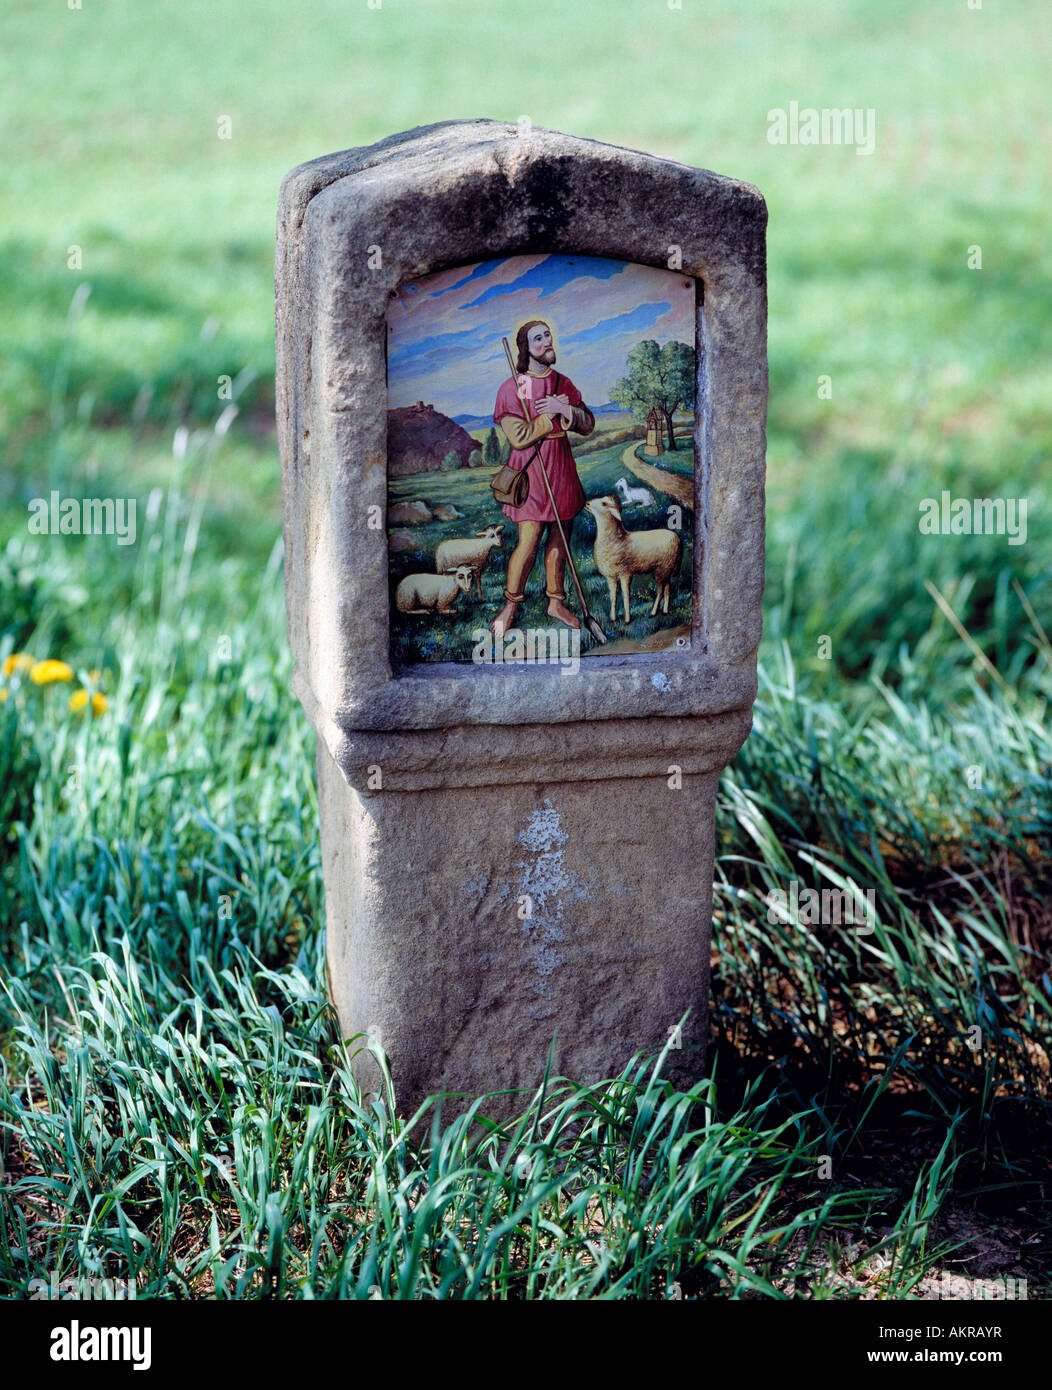 Bildstock mit bildlicher Darstellung von Jesus Christus als Schafhirte, Vilseck, Oberpfalz, Bayern Foto Stock